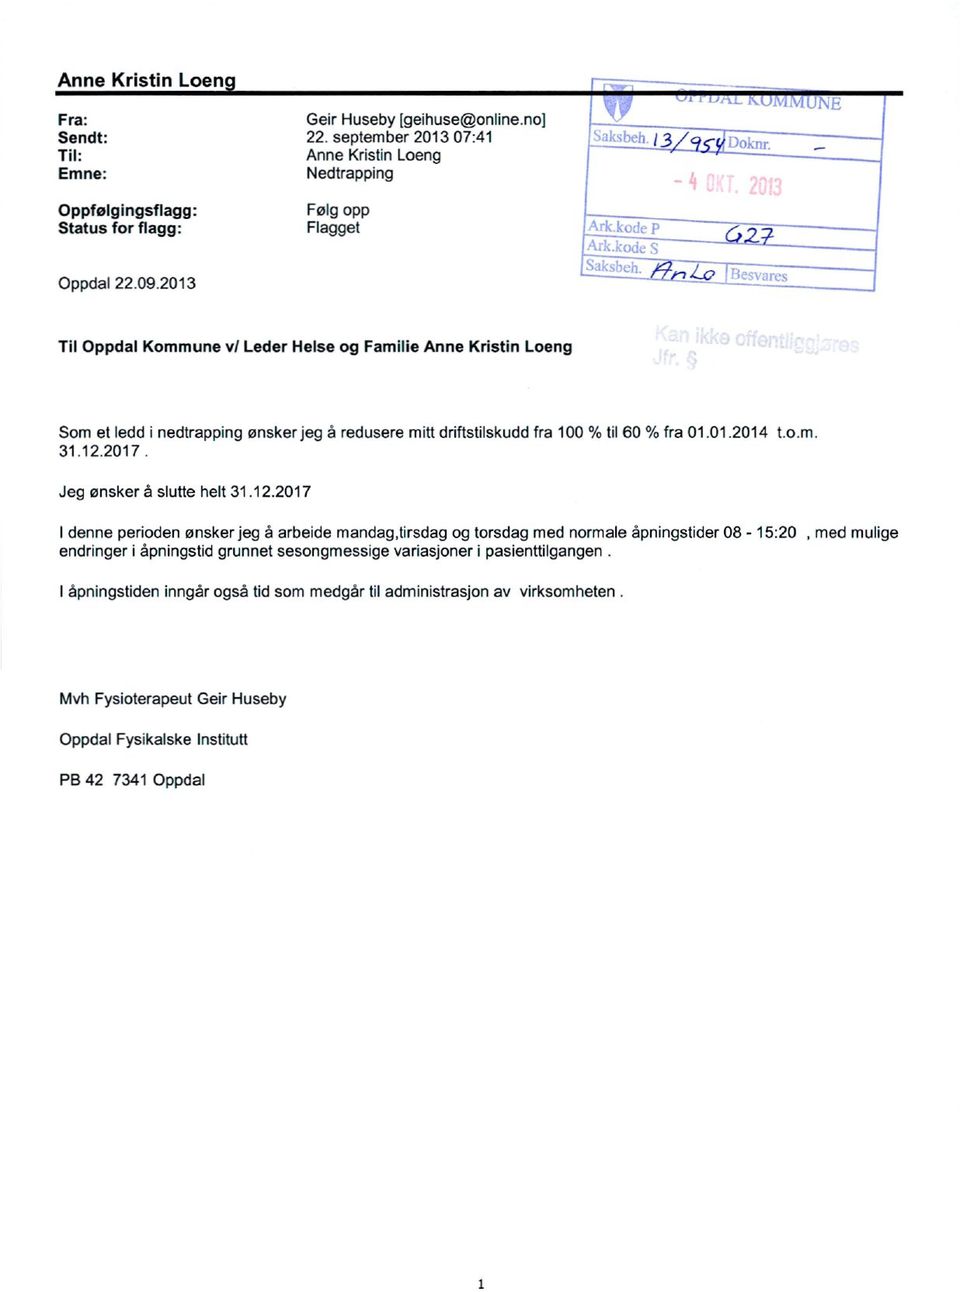 2013 Til Oppdal Kommune v/ Leder Helse og Familie Anne Kristin Loeng Som et ledd i nedtrapping ønsker jeg å redusere mitt driftstilskudd fra 100 % til 60 % fra 01.01.2014 t.o.m. 31.12.2017.